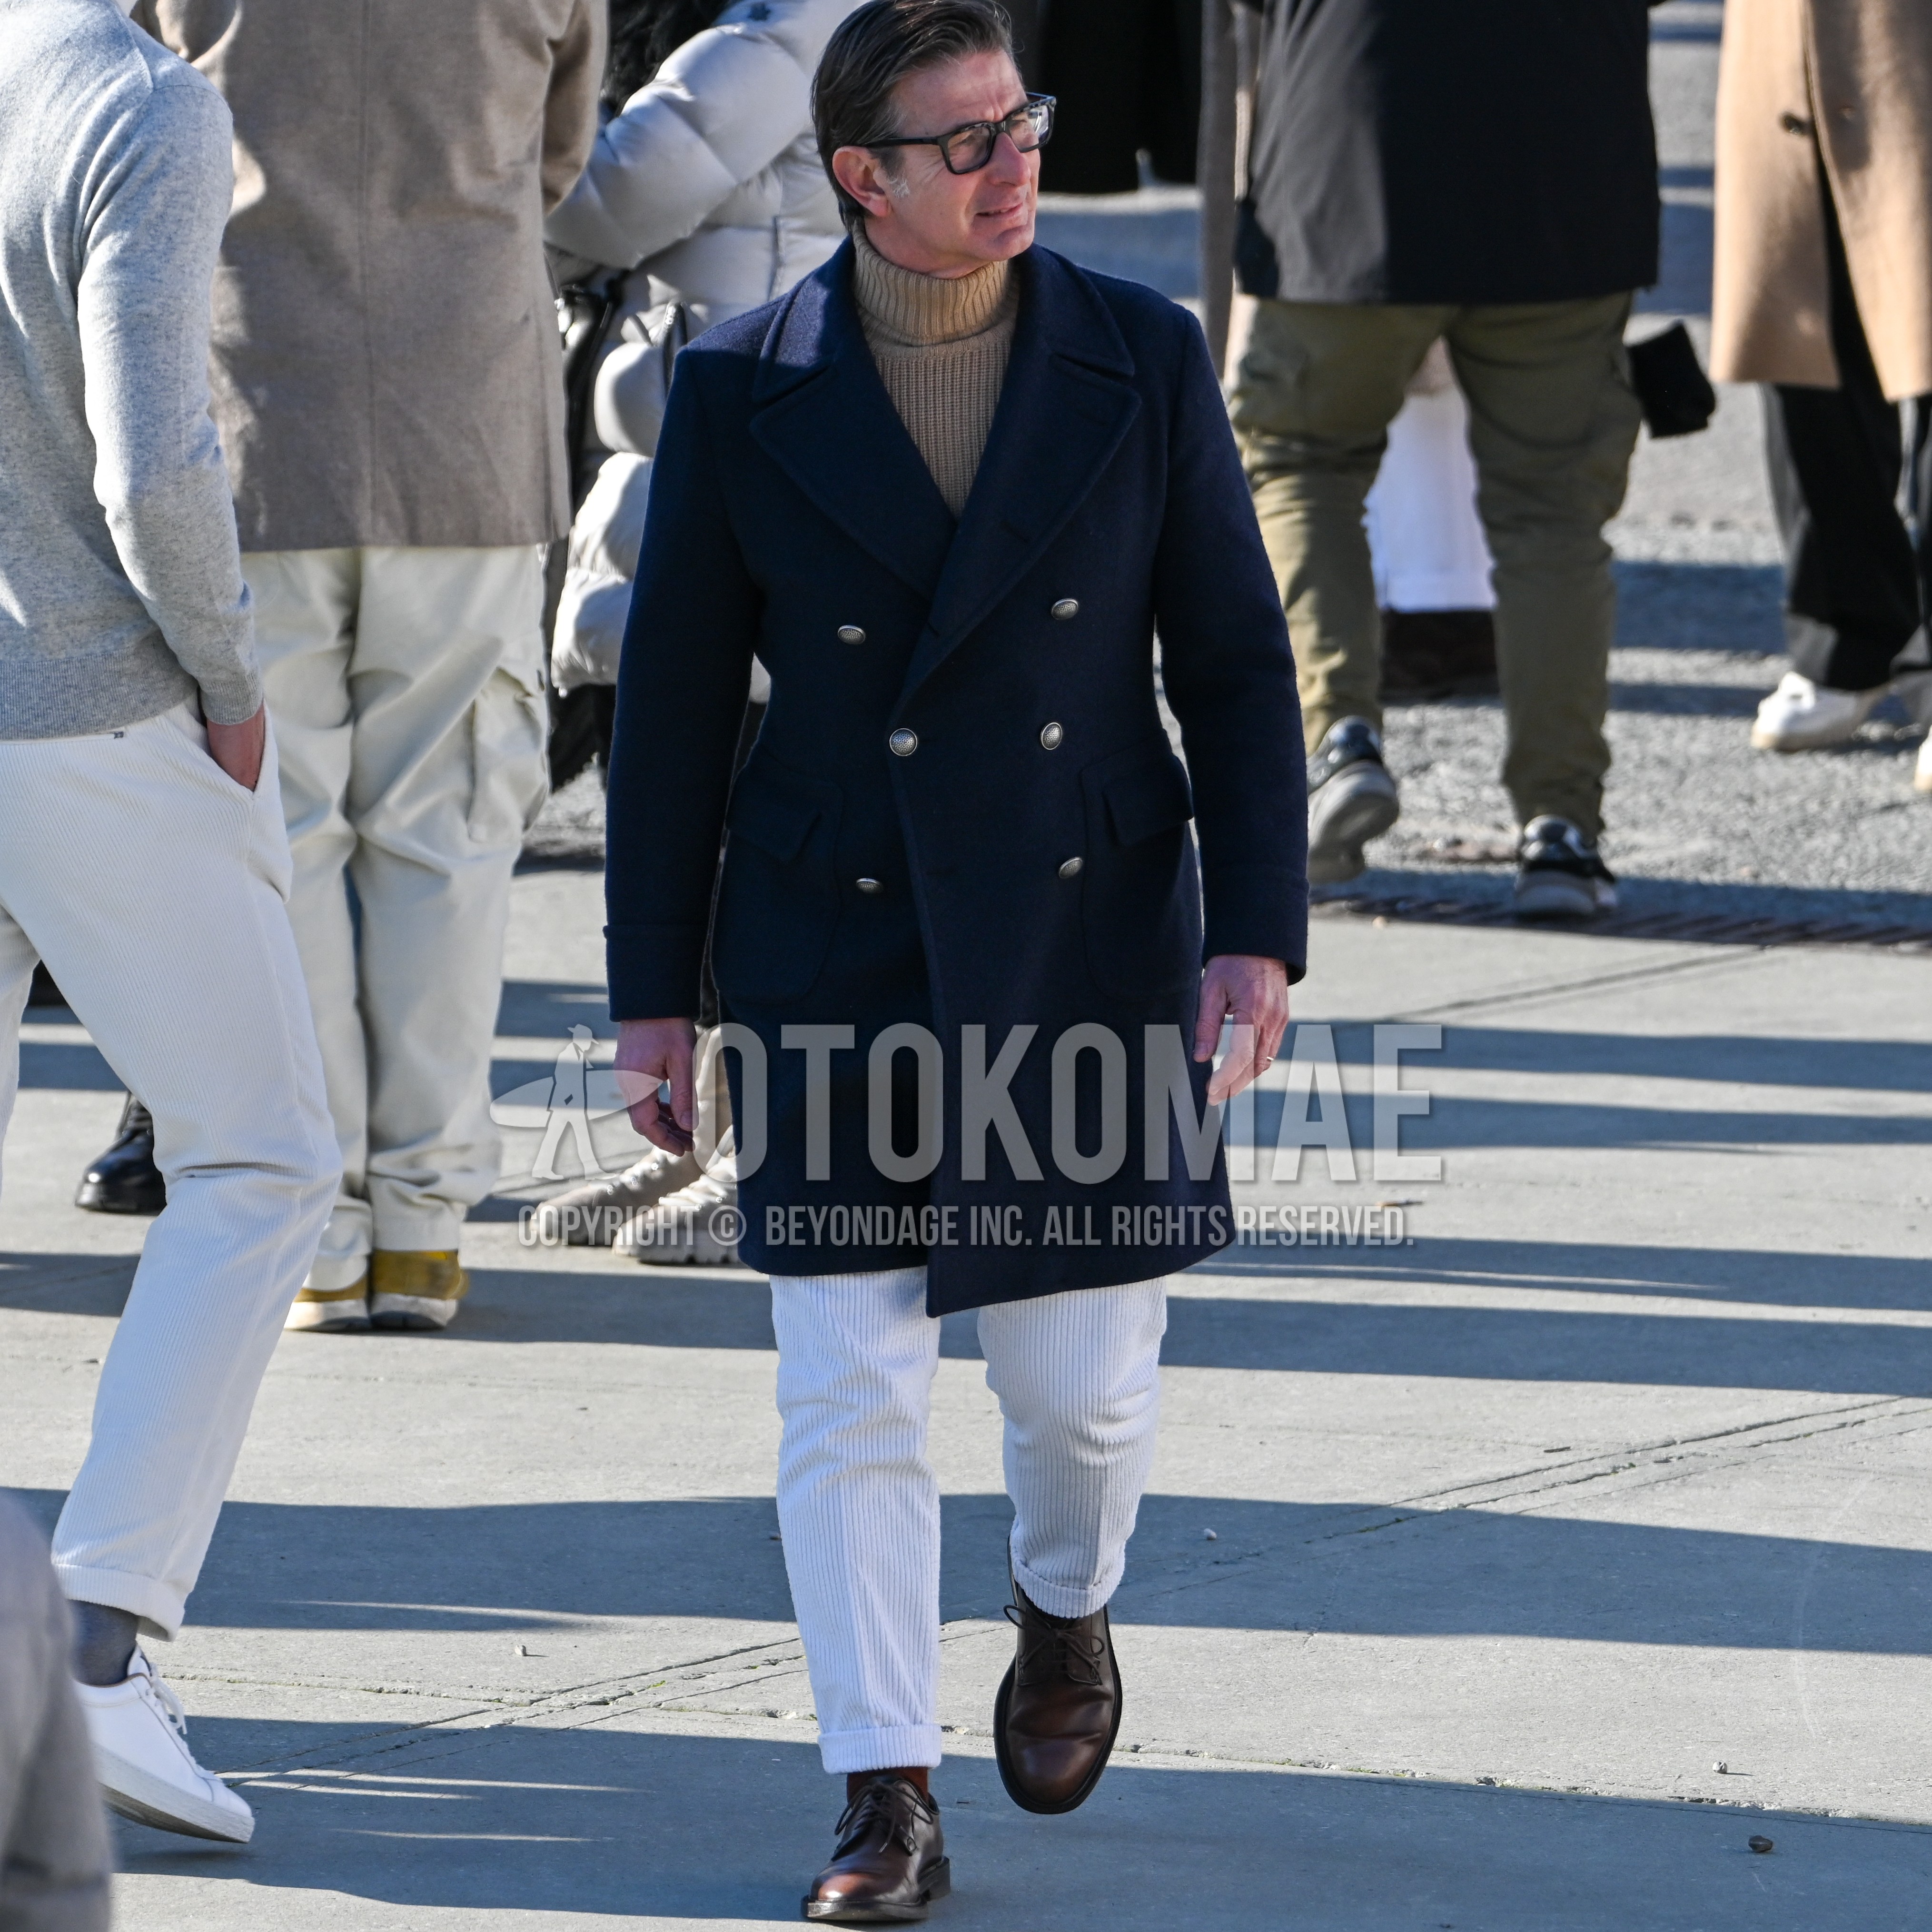 Men's autumn winter outfit with black plain glasses, navy plain ulster coat, beige plain turtleneck knit, white plain winter pants (corduroy,velour), brown plain toe leather shoes.